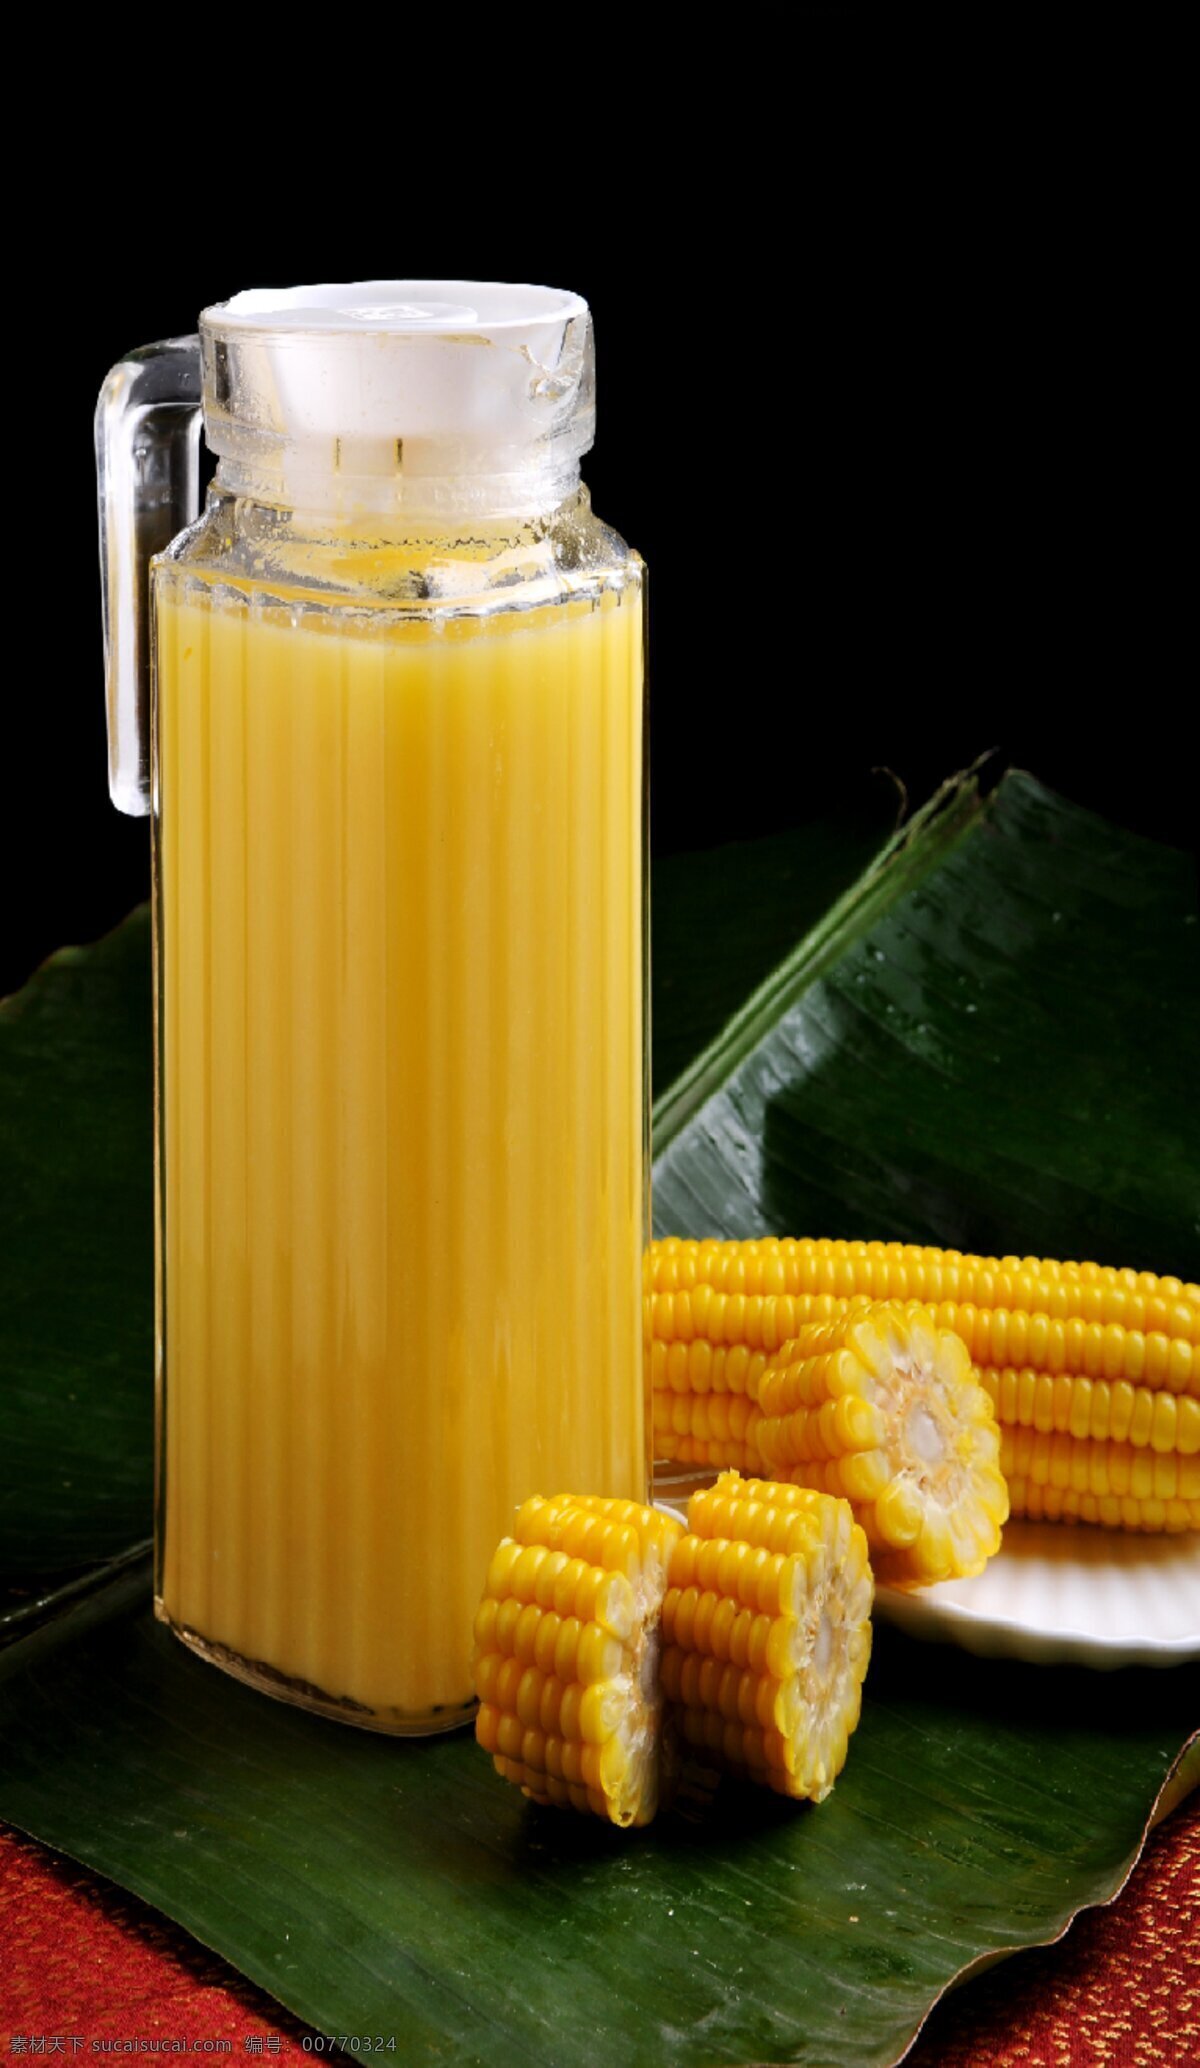 田园玉米汁 玉米汁 玉米 汁 蔬菜汁 养颜玉米汁 餐饮美食 饮料酒水